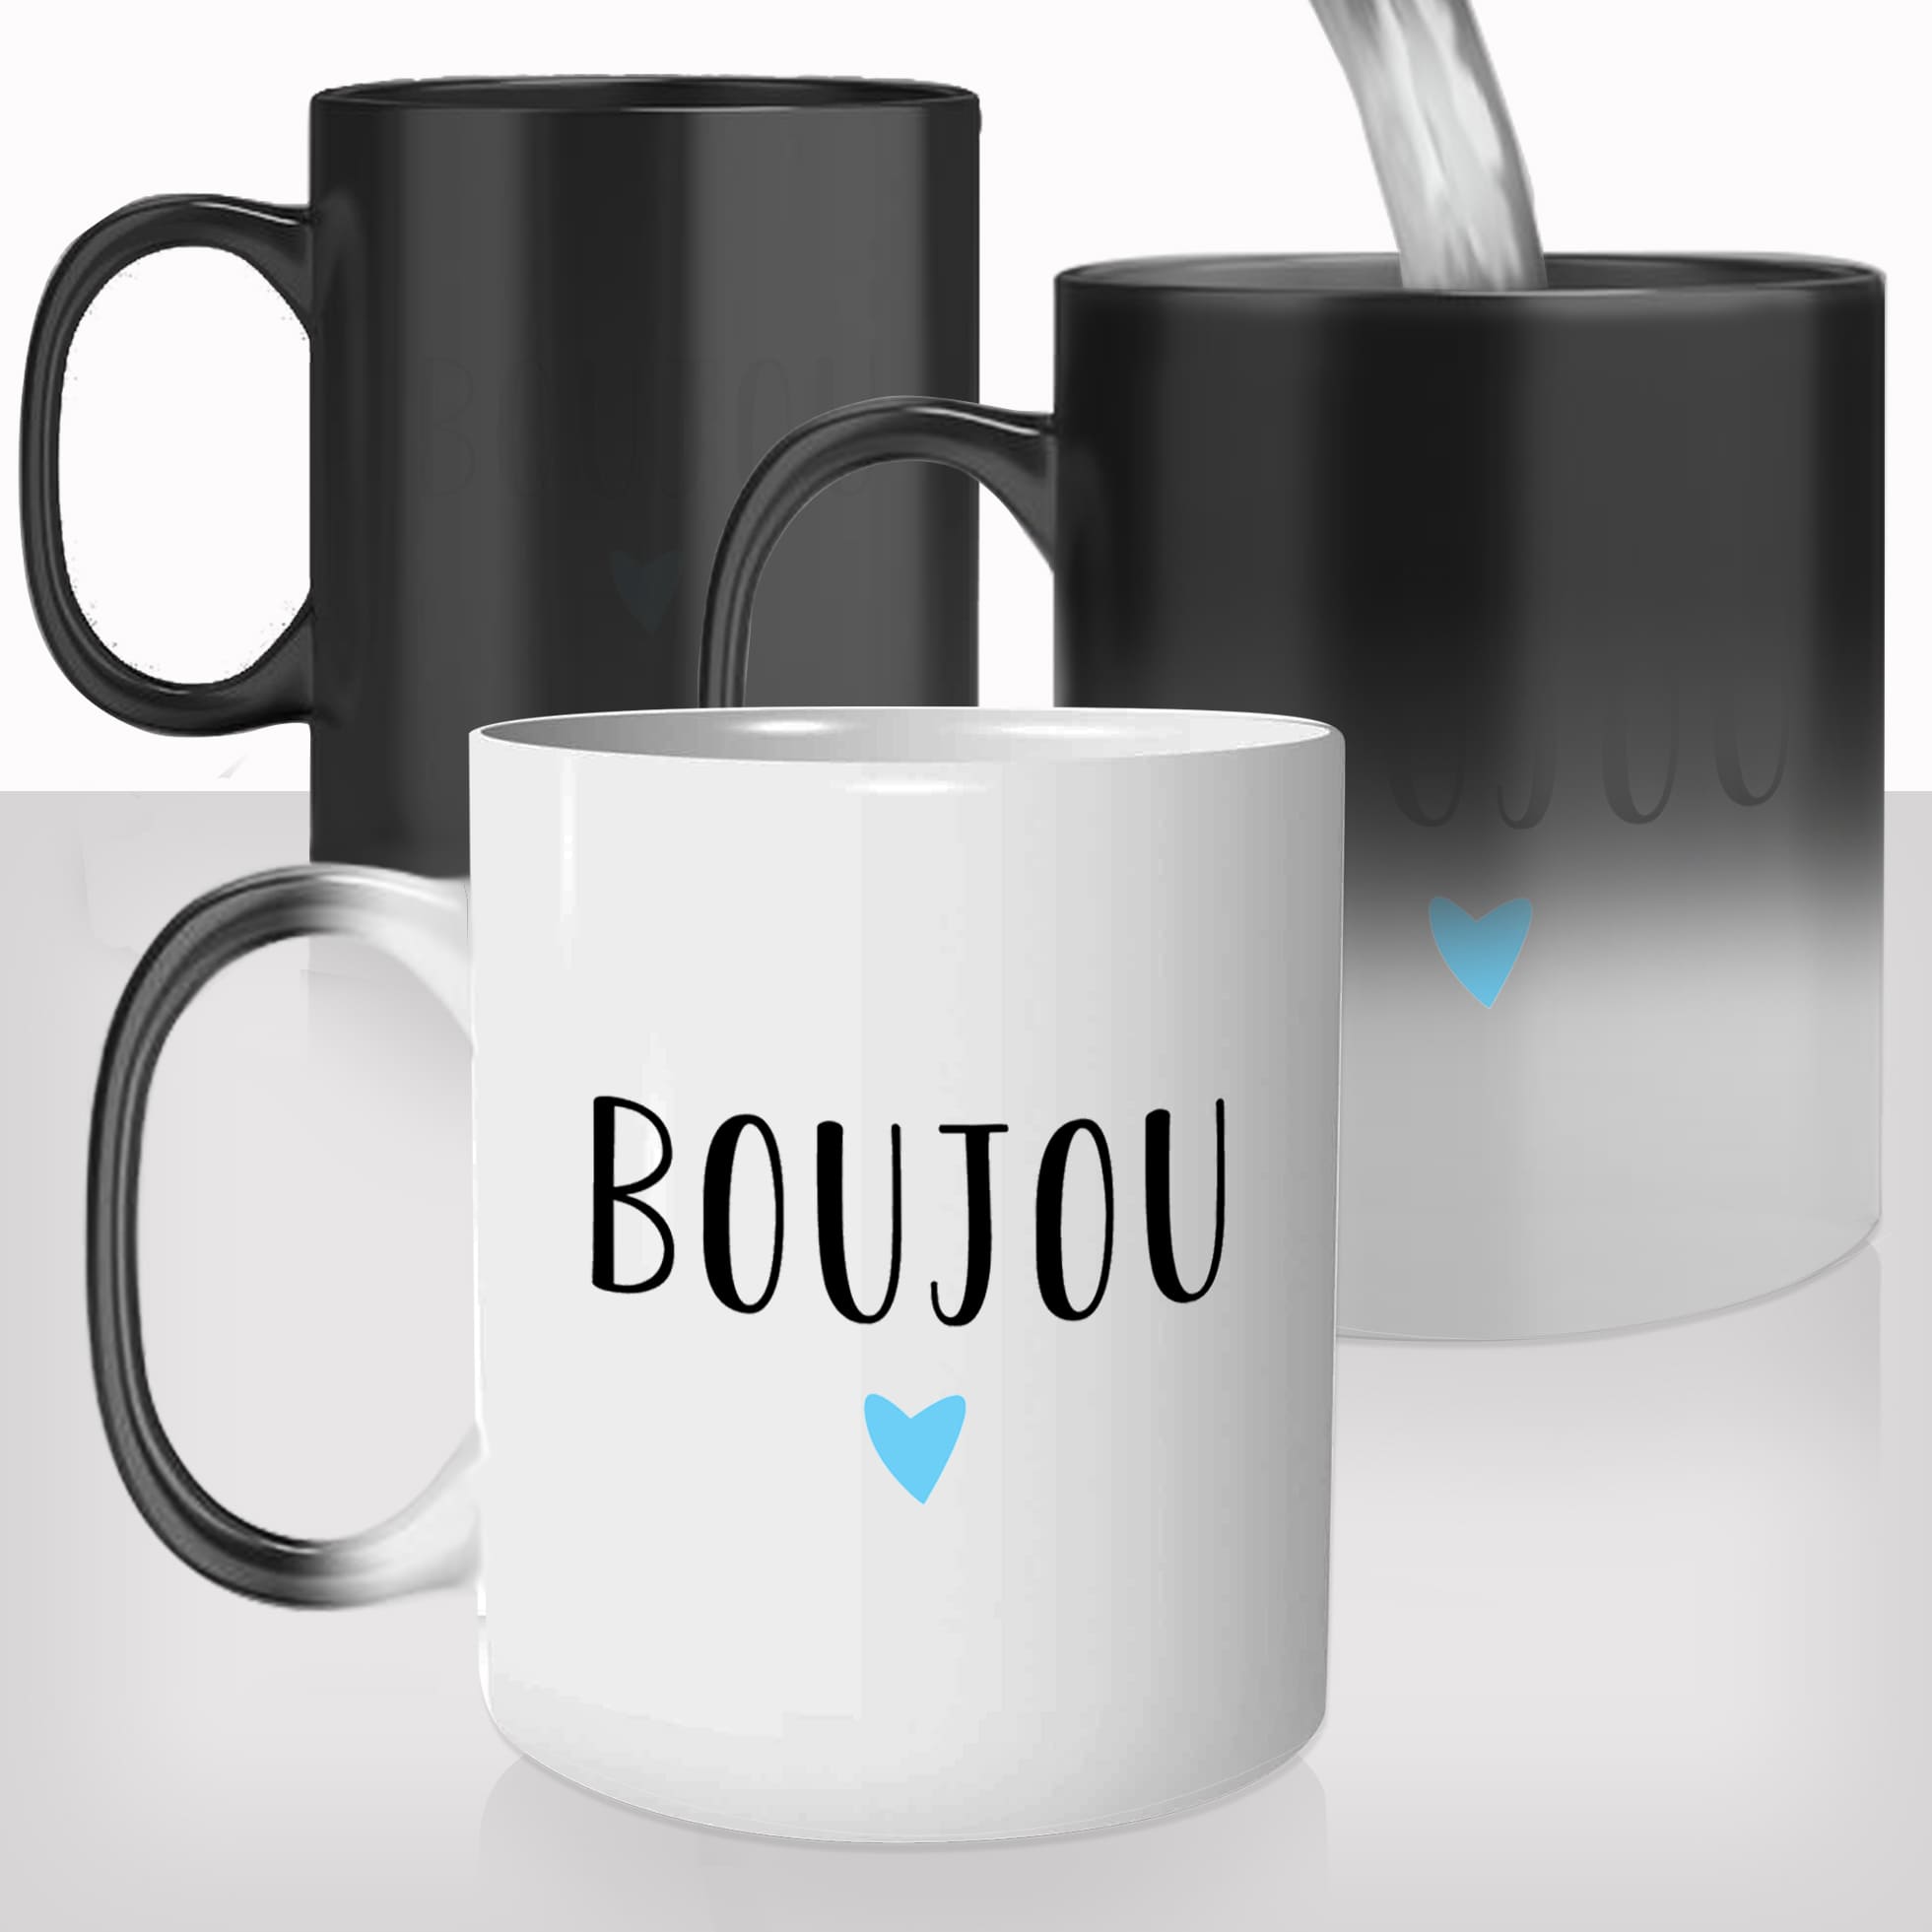 mug-magique-tasse-magic-thermo-reactif-chauffant-boujou-bonjour-bisou-normandie-normand-france-photo-personnalisé-cadeau-original-fun